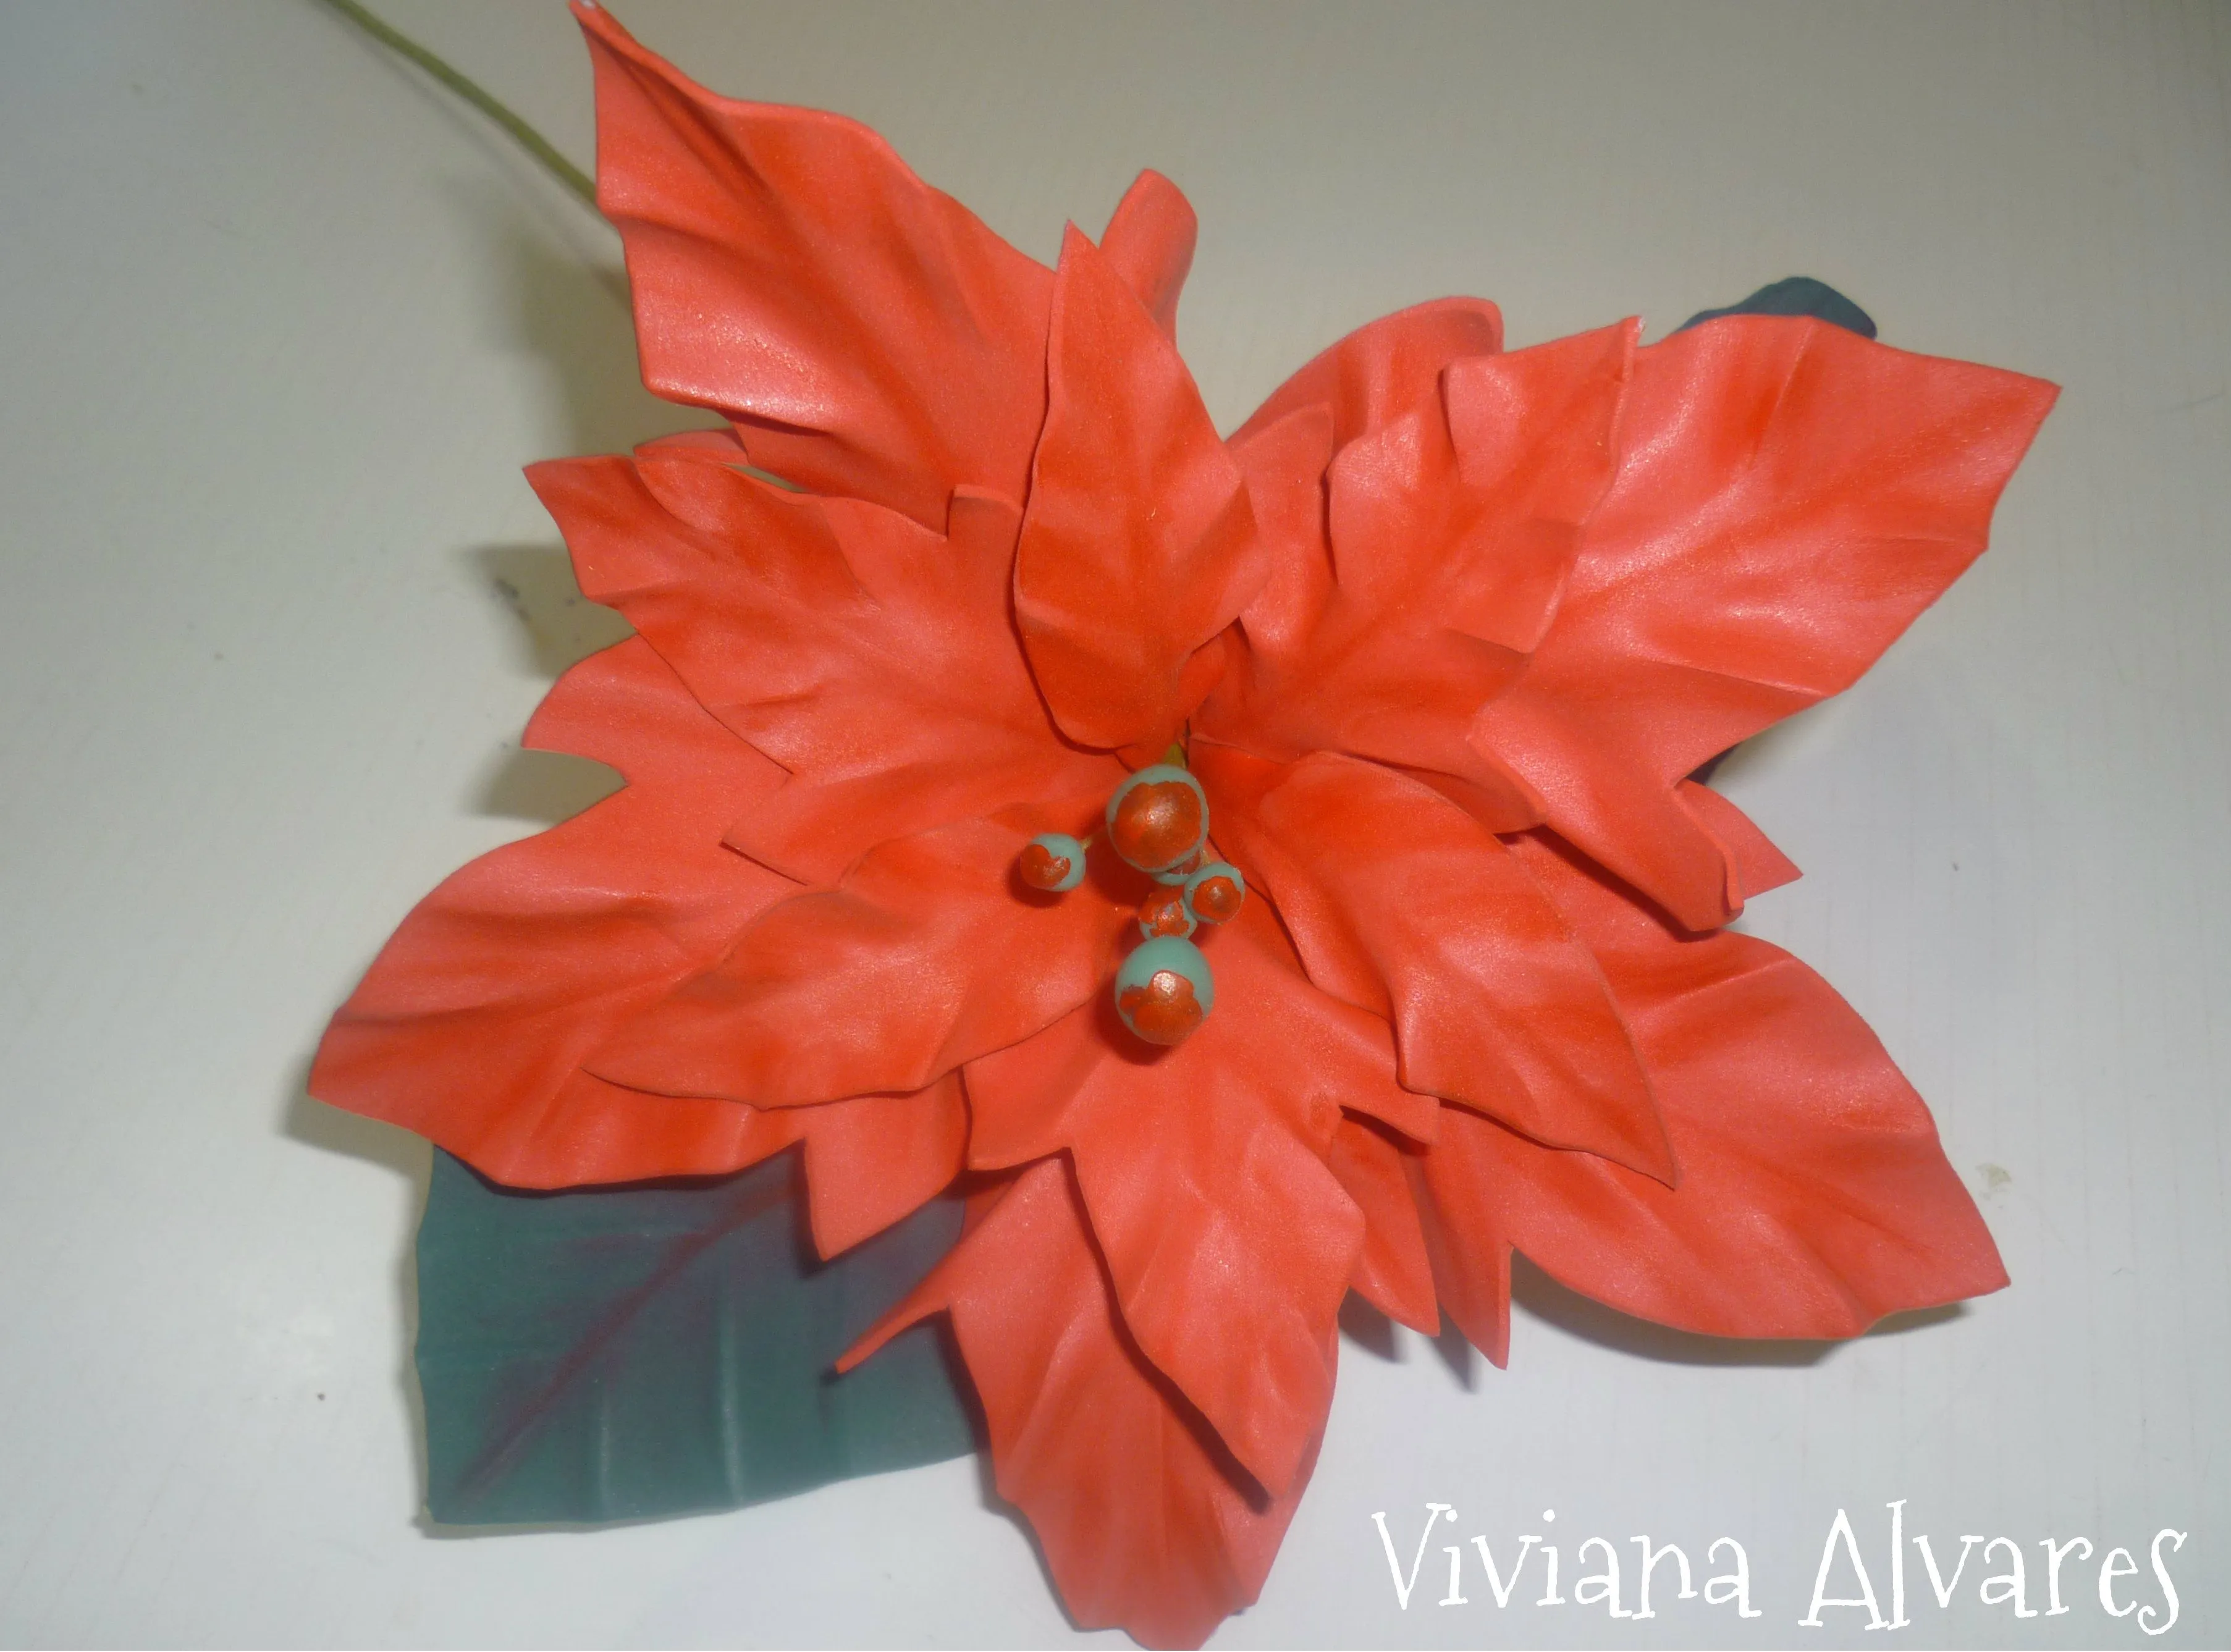 viviana alvares | Realizamos Flores Artesanales en goma eva.